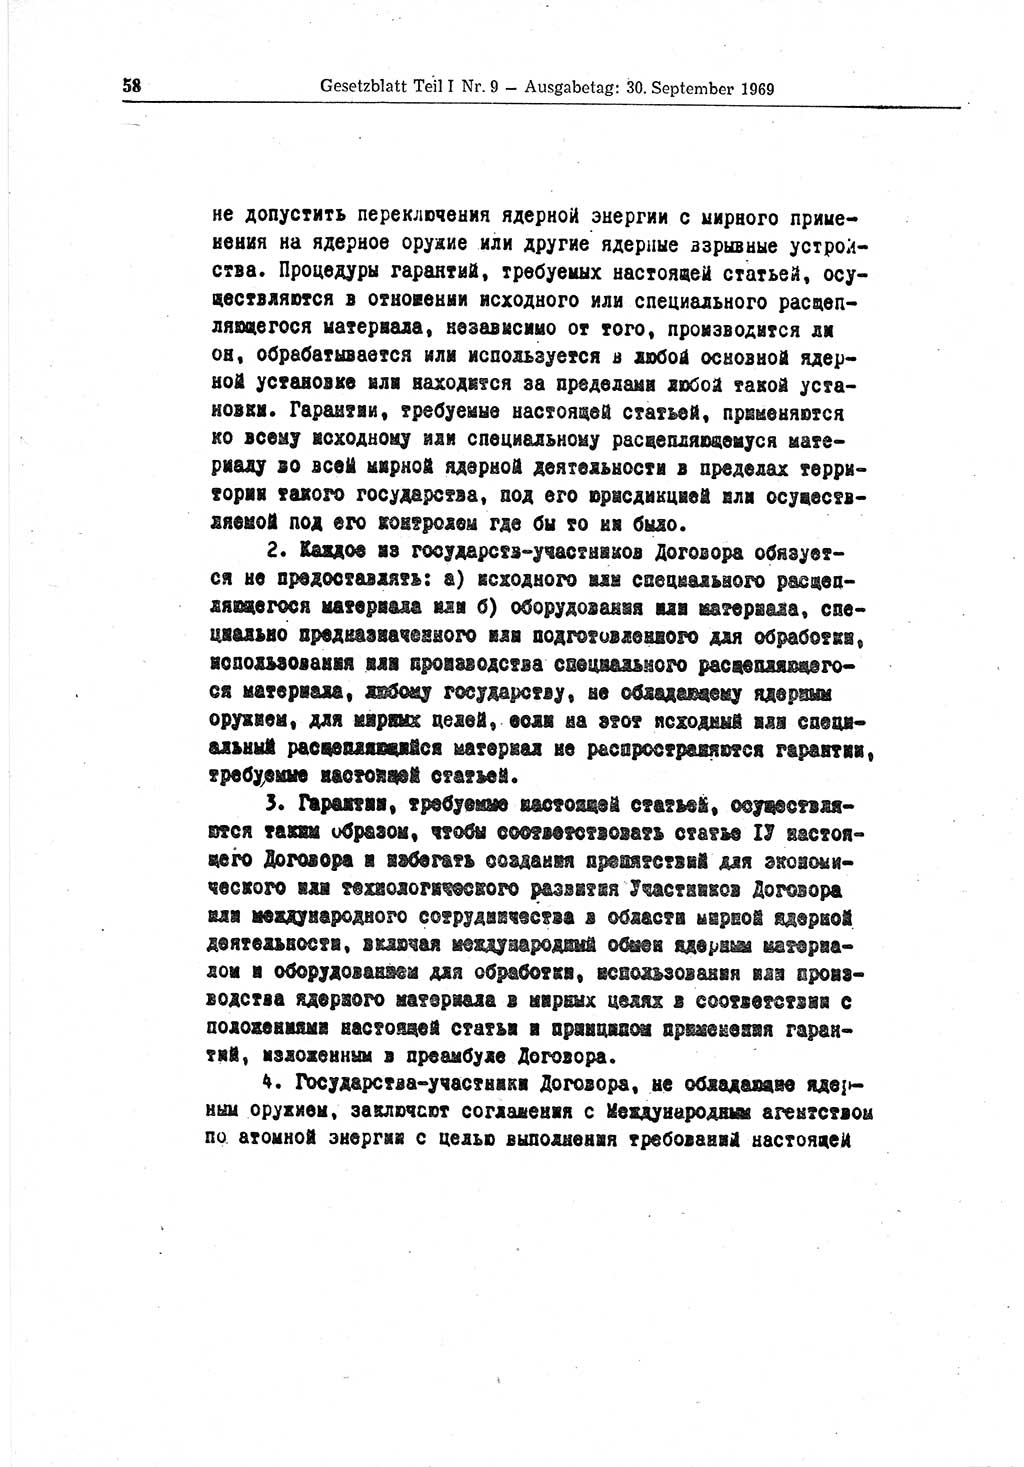 Gesetzblatt (GBl.) der Deutschen Demokratischen Republik (DDR) Teil Ⅰ 1969, Seite 58 (GBl. DDR Ⅰ 1969, S. 58)